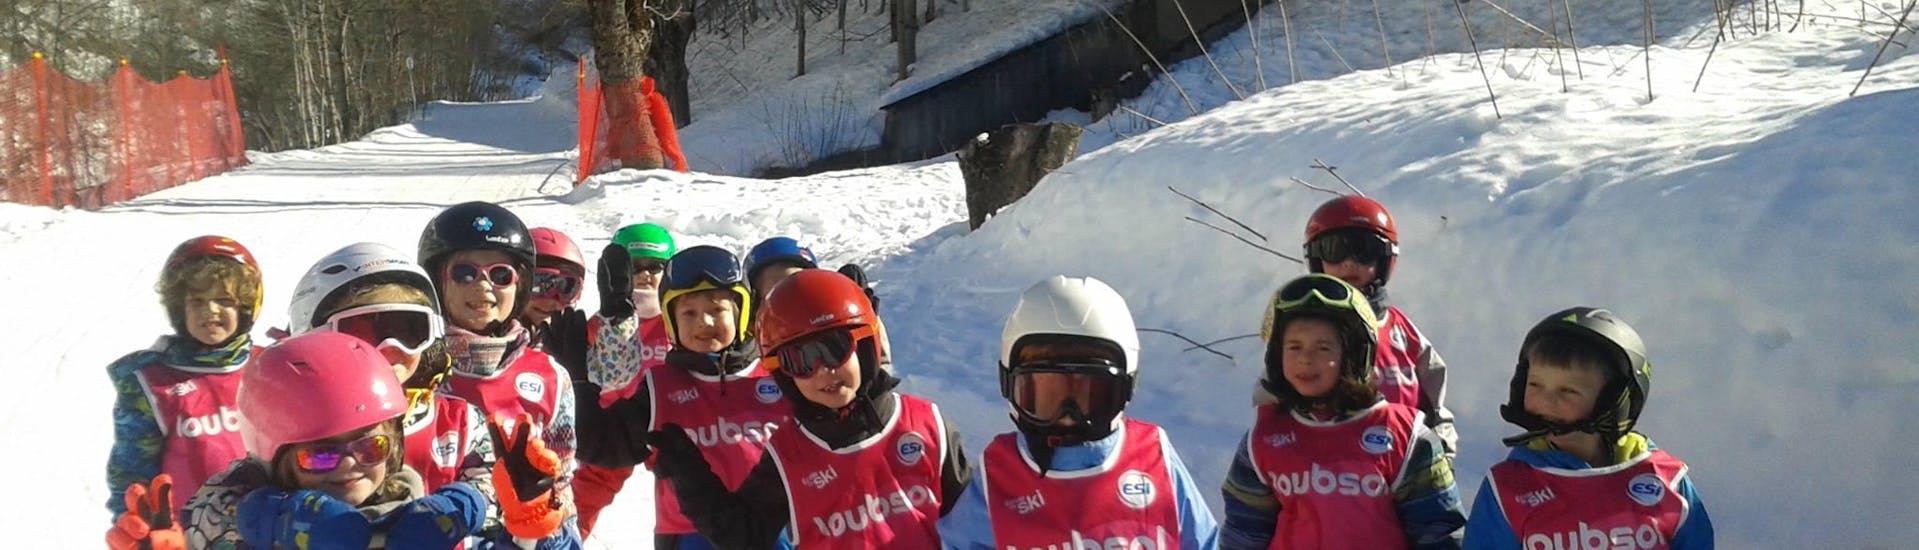 Kinder-Skikurs ab 3 Jahren ohne Erfahrung.